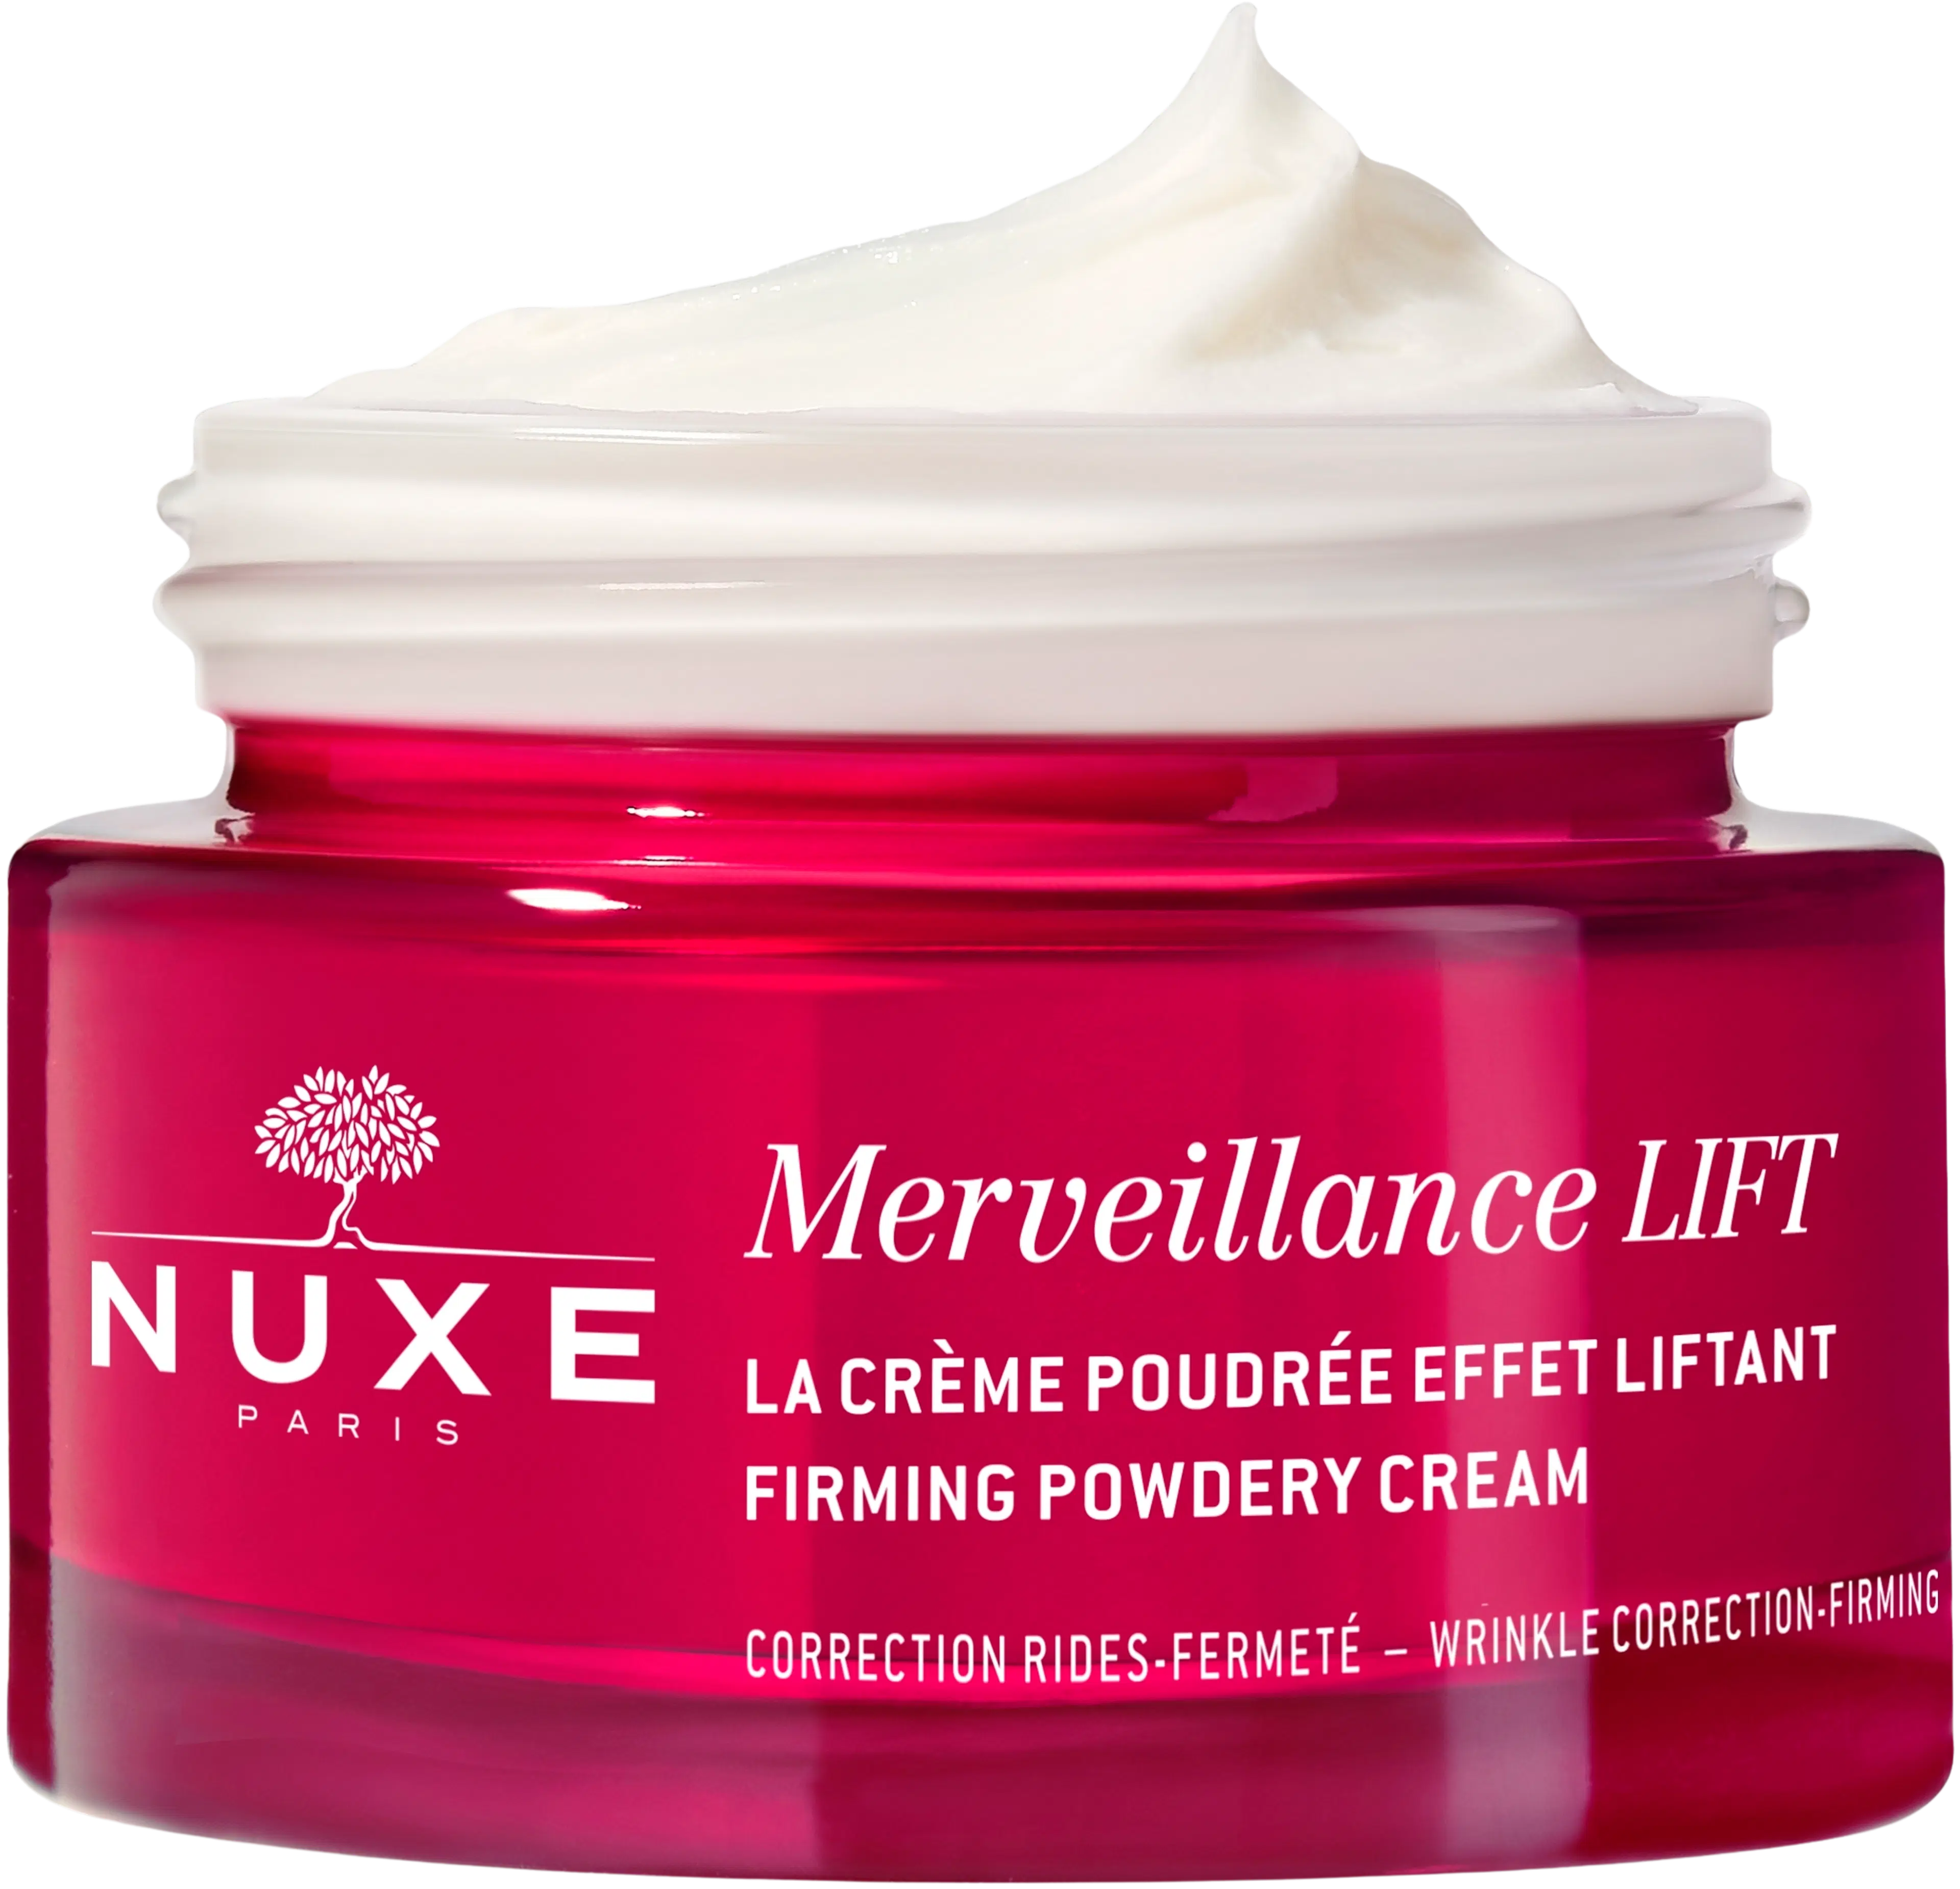 NUXE Merveillance Lift Firming Powdery Cream kasvovoide  50 ml